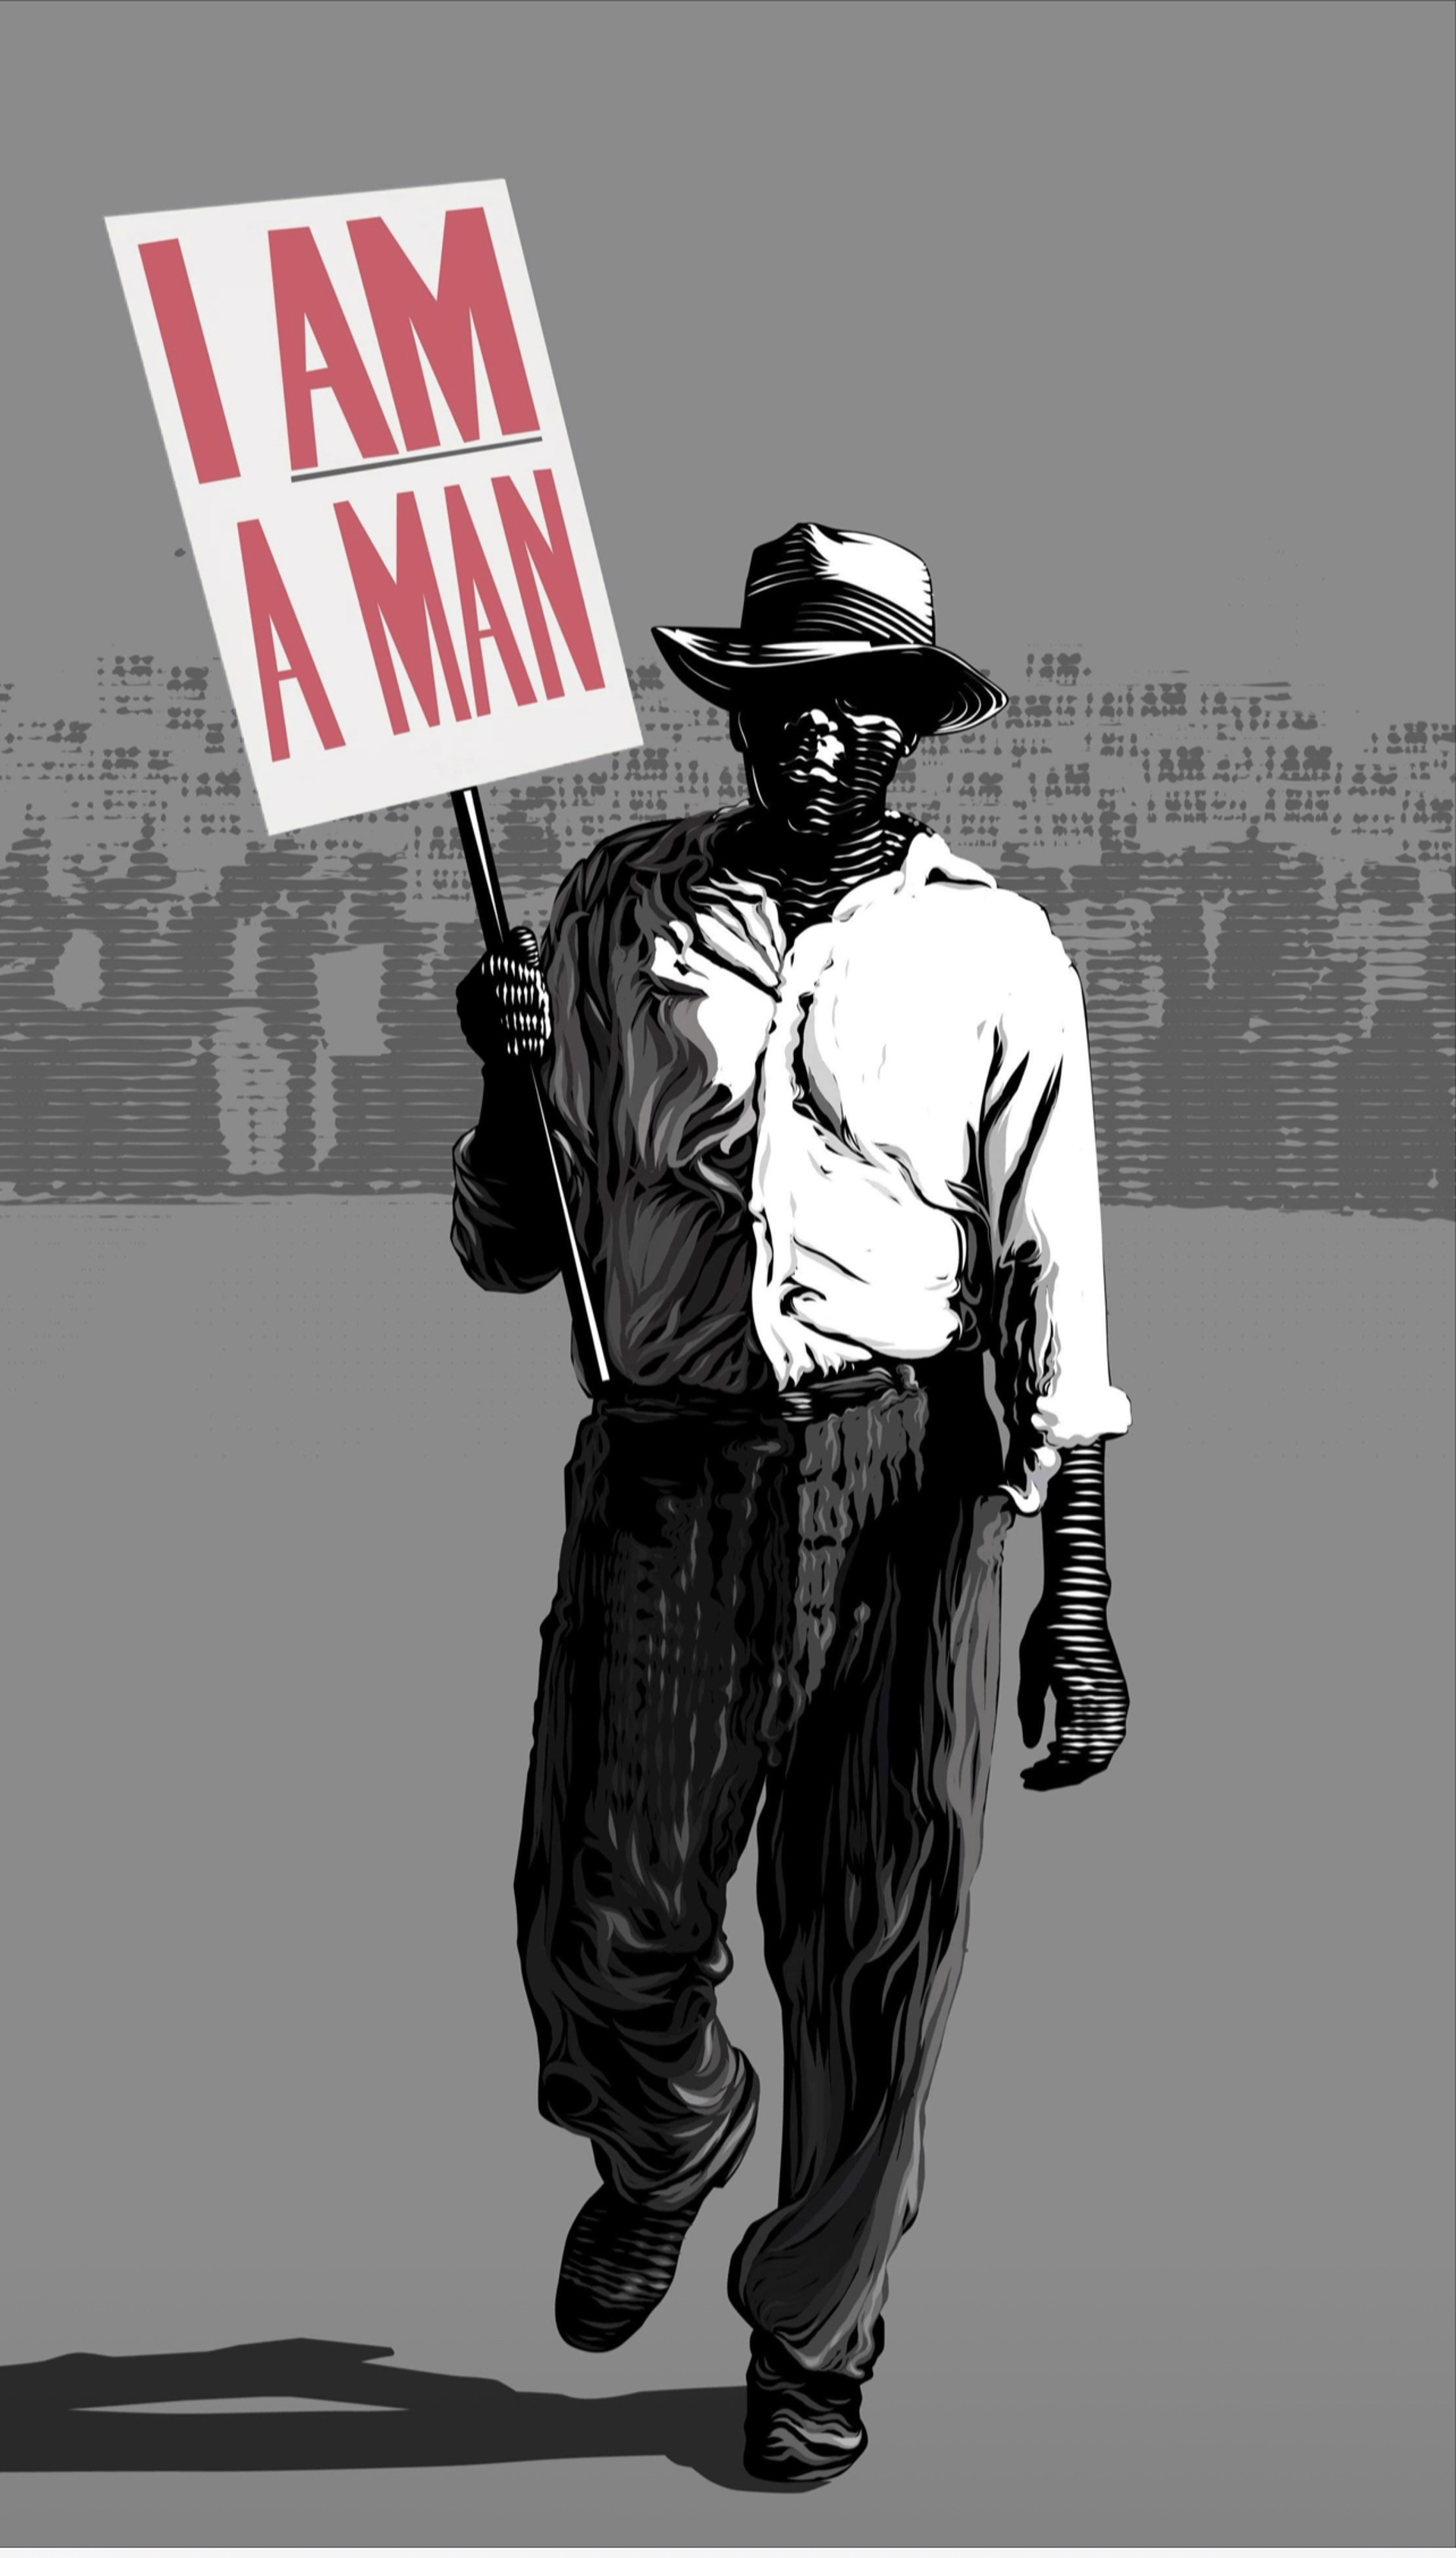 "I am A Man" by Ellis Echevarria